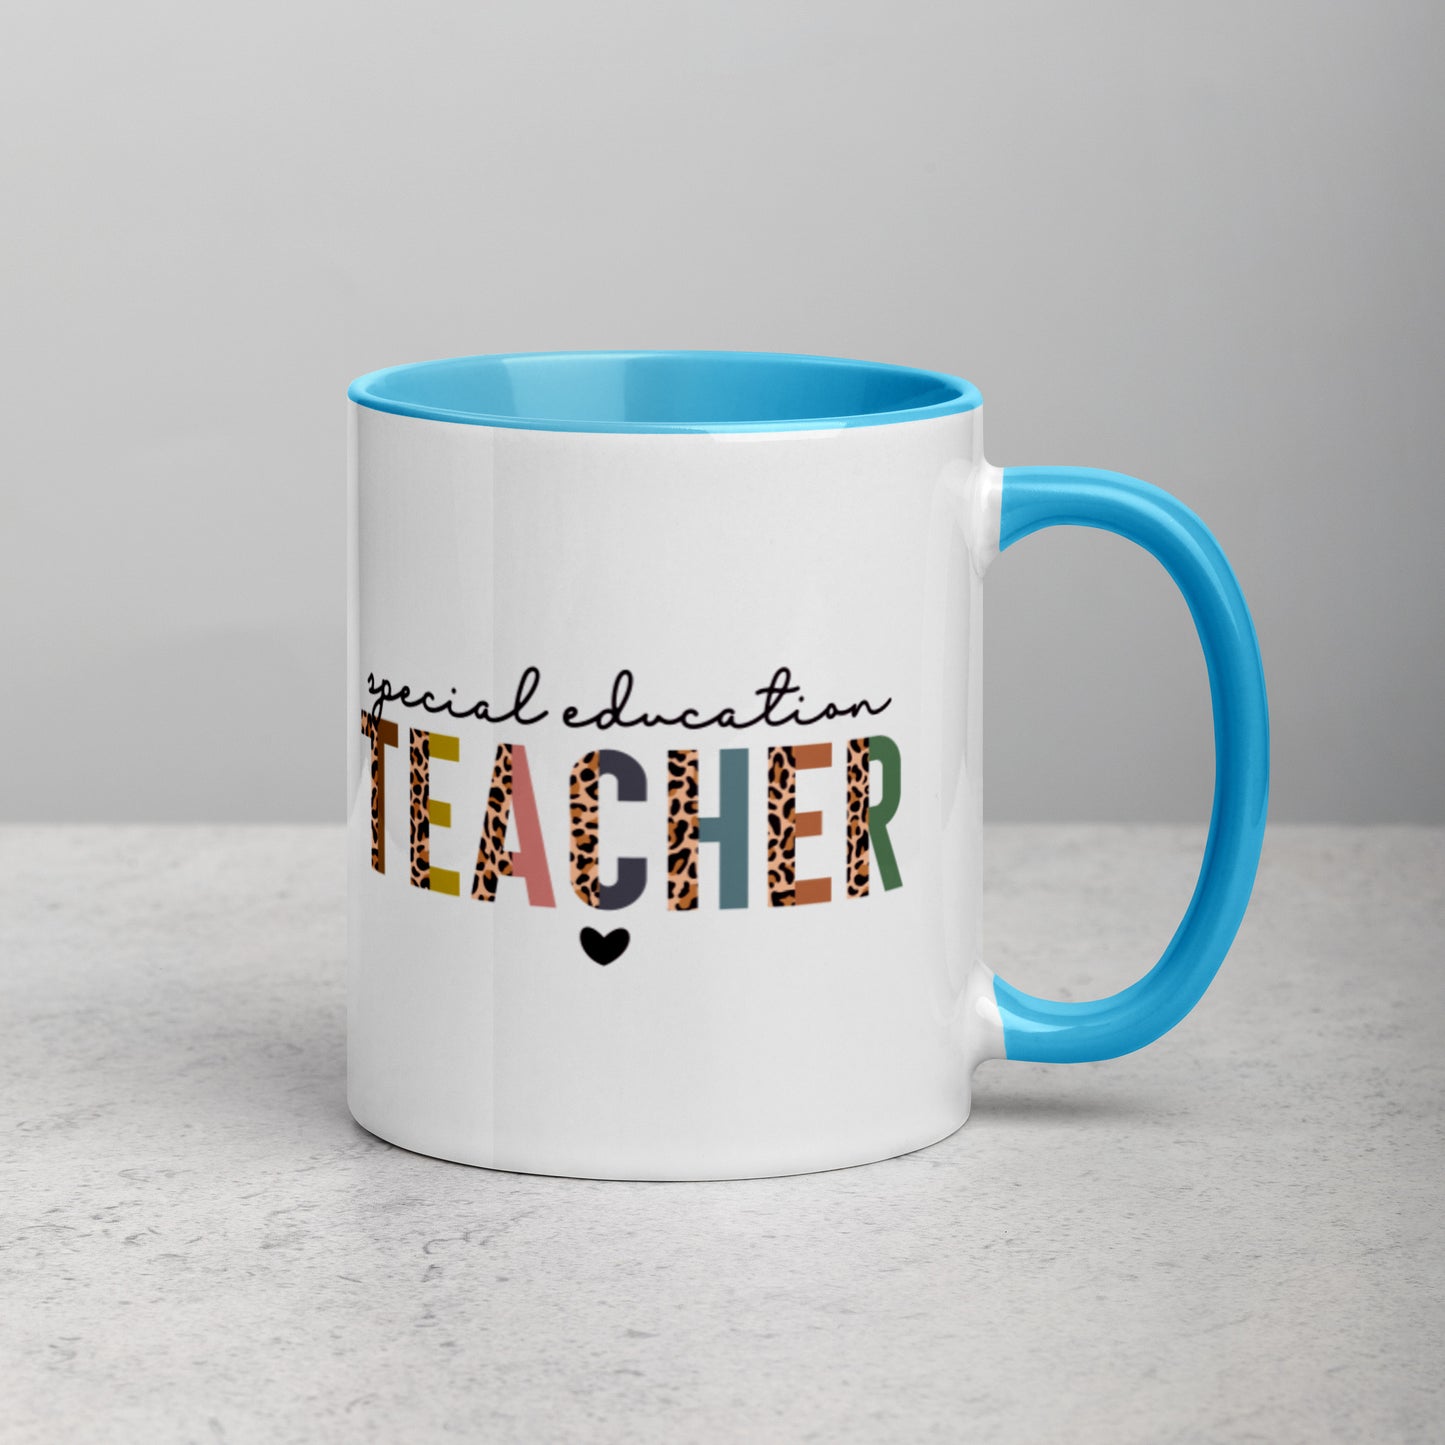 "Special Education Teacher" Mug with Color Inside, 11oz